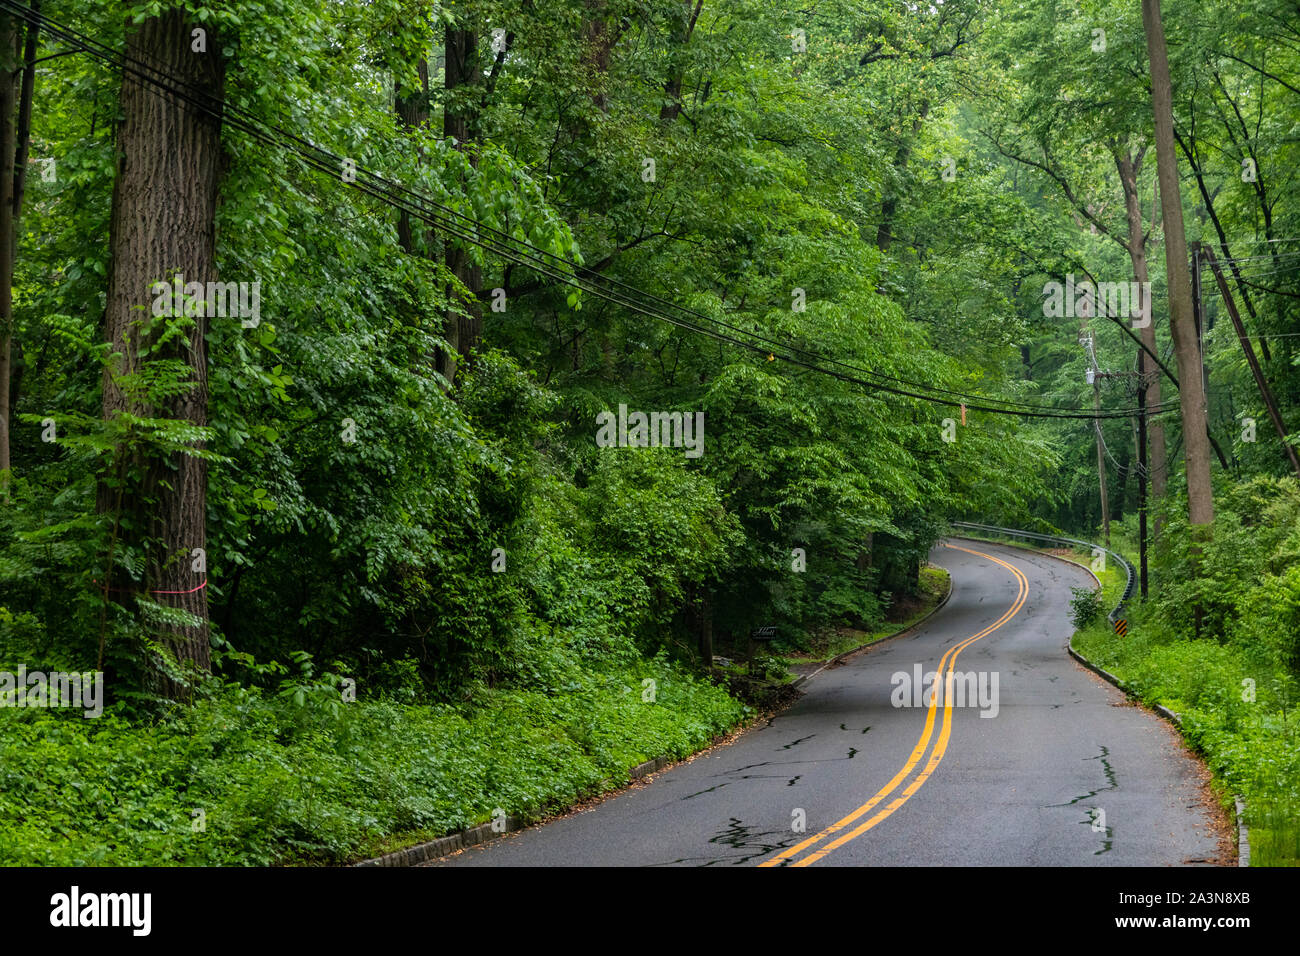 La tortuosa strada a due corsie conduce in lussureggianti boschi verdi intorno alla curva cieca Foto Stock